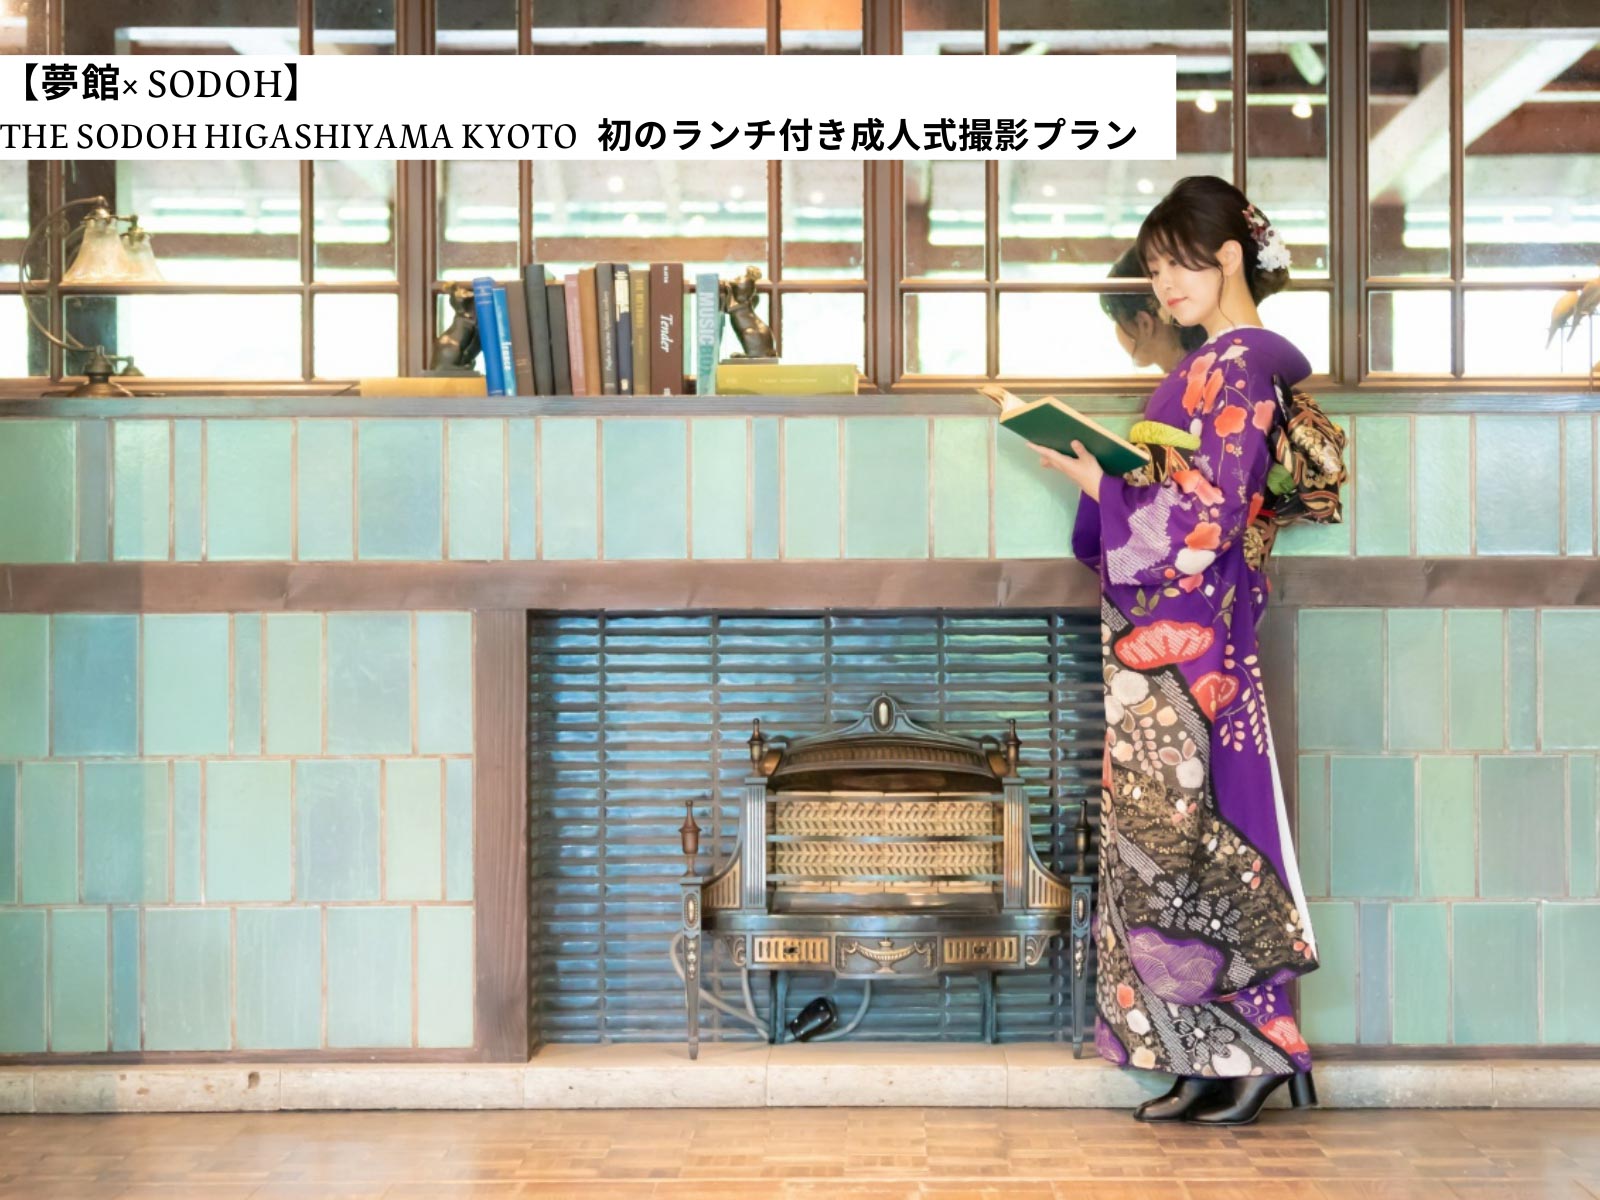 【夢館× SODOH】 THE SODOH HIGASHIYAMA KYOTO 初のランチ付き成人式撮影プラン